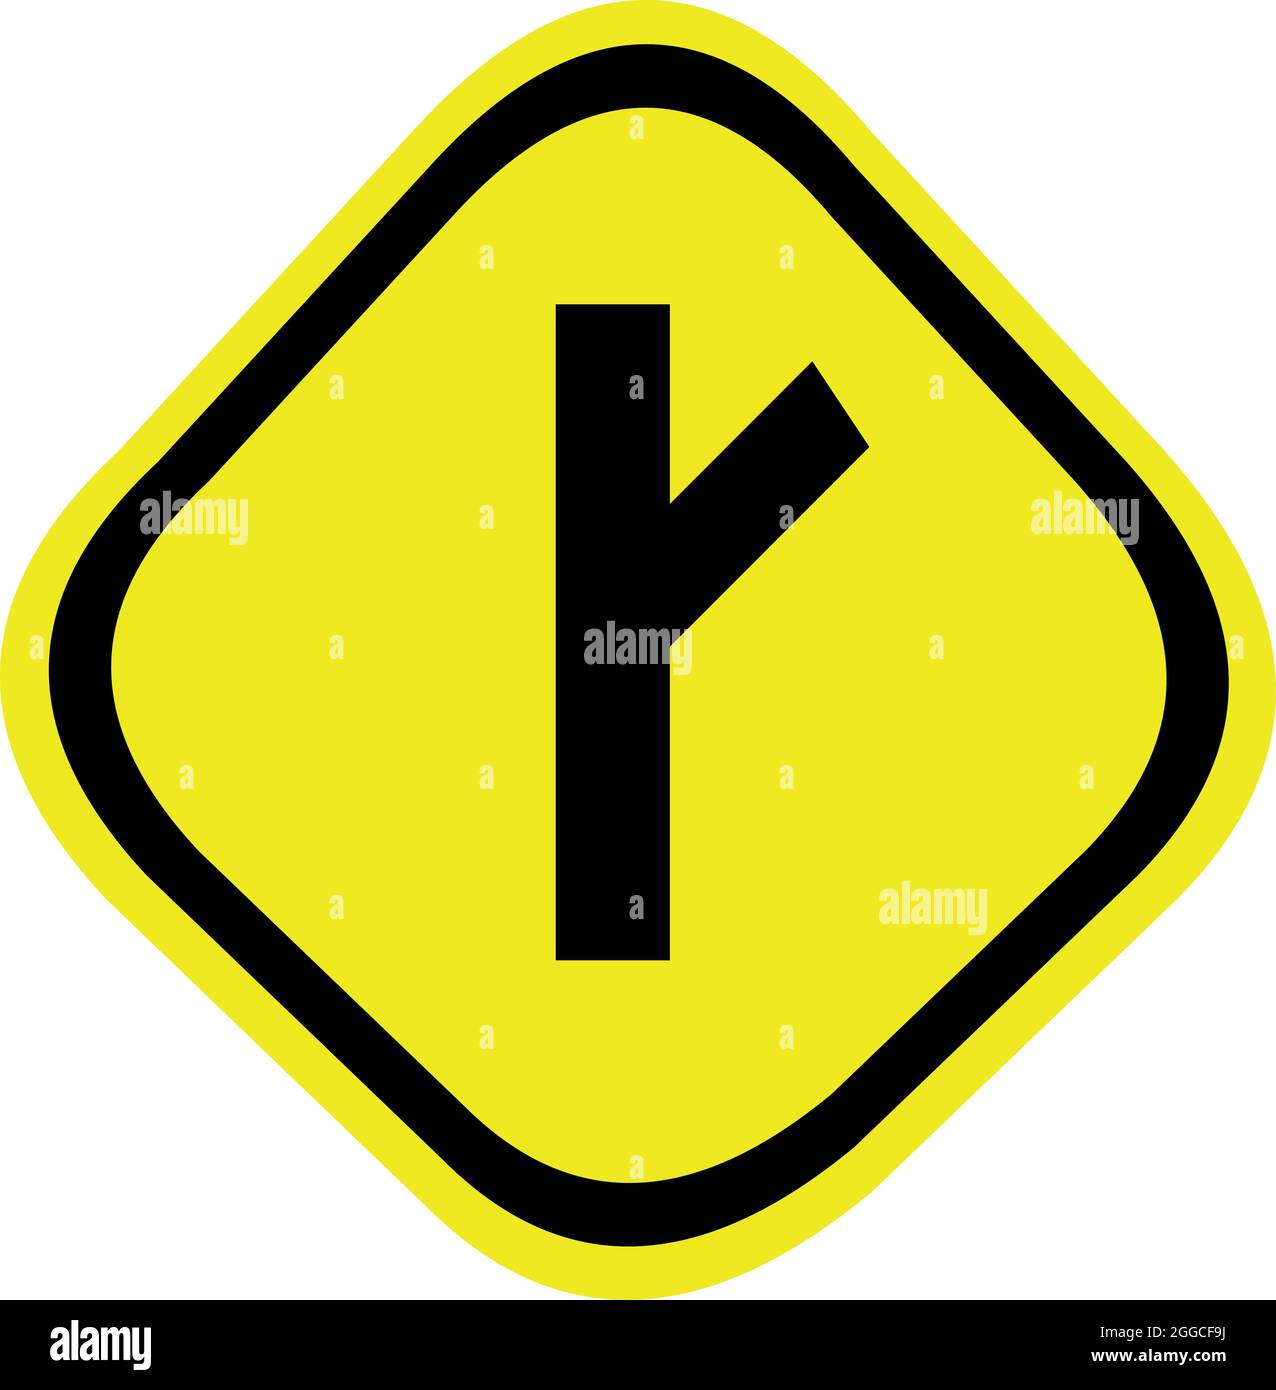 Illustrazione vettoriale della segnaletica stradale che indica l'intersezione con la strada laterale destra o diagonale Illustrazione Vettoriale